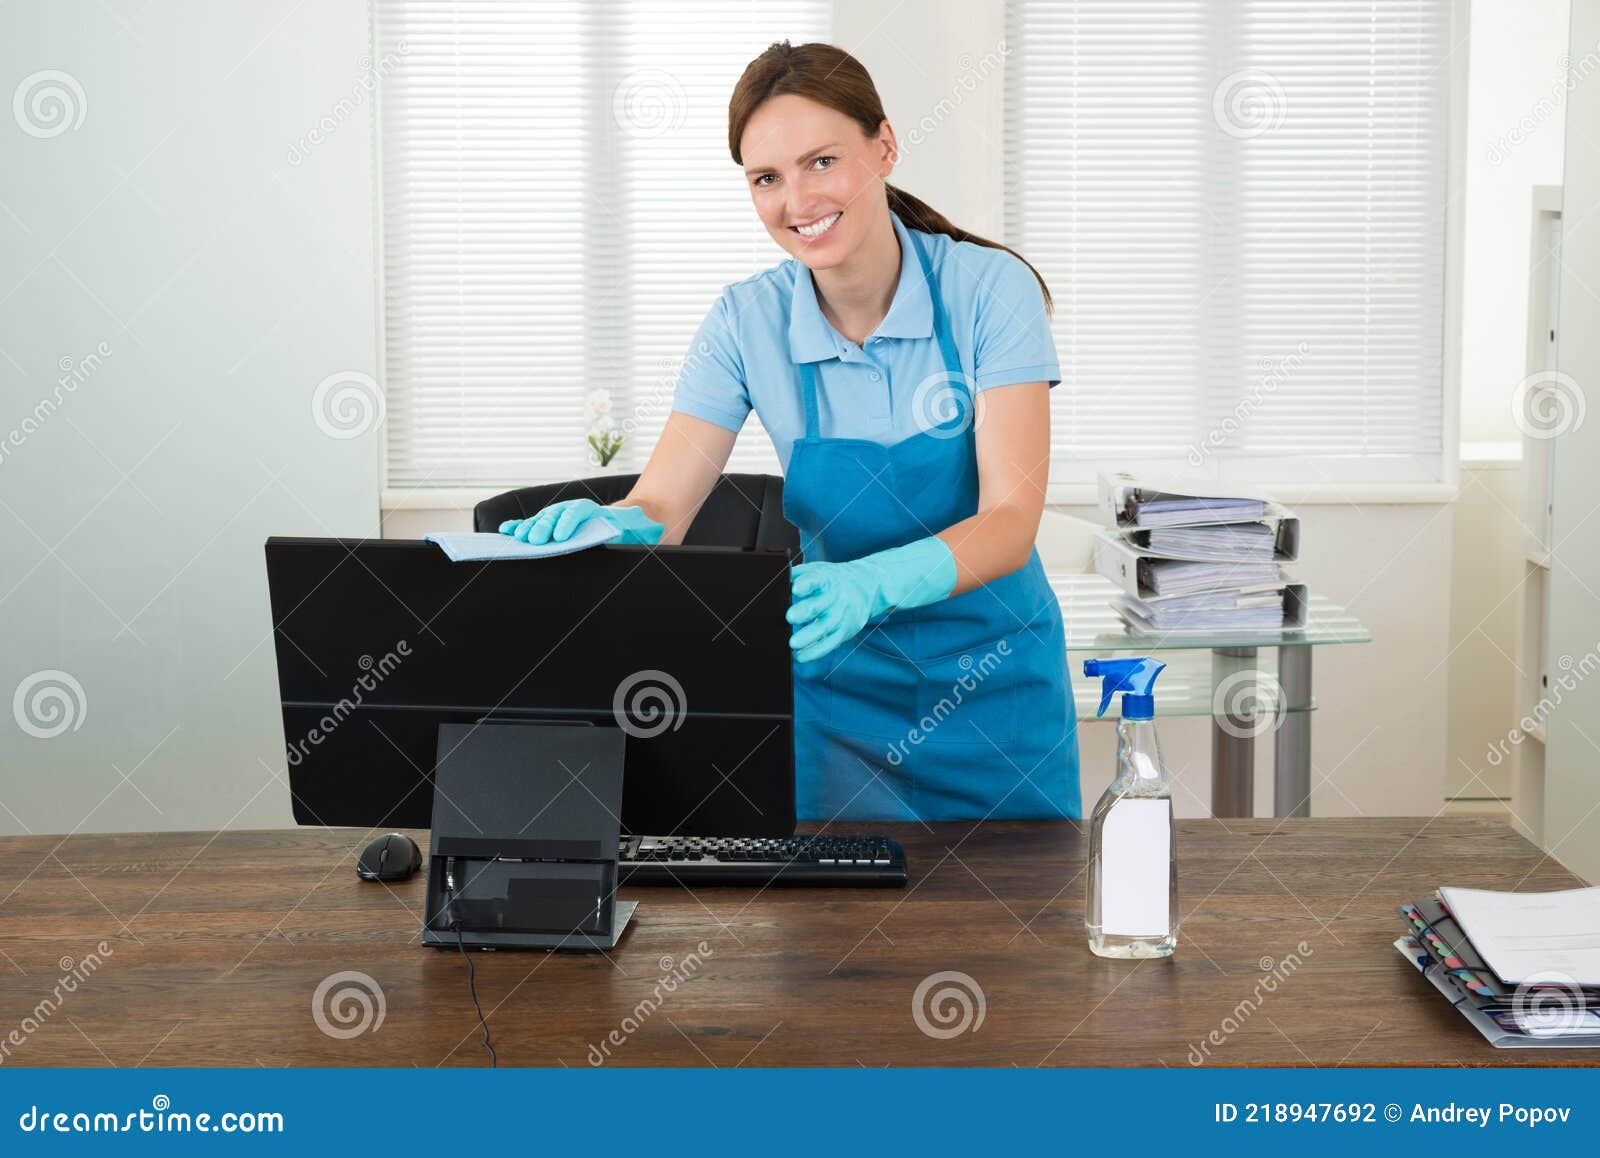 woman in workwear rubbing computer